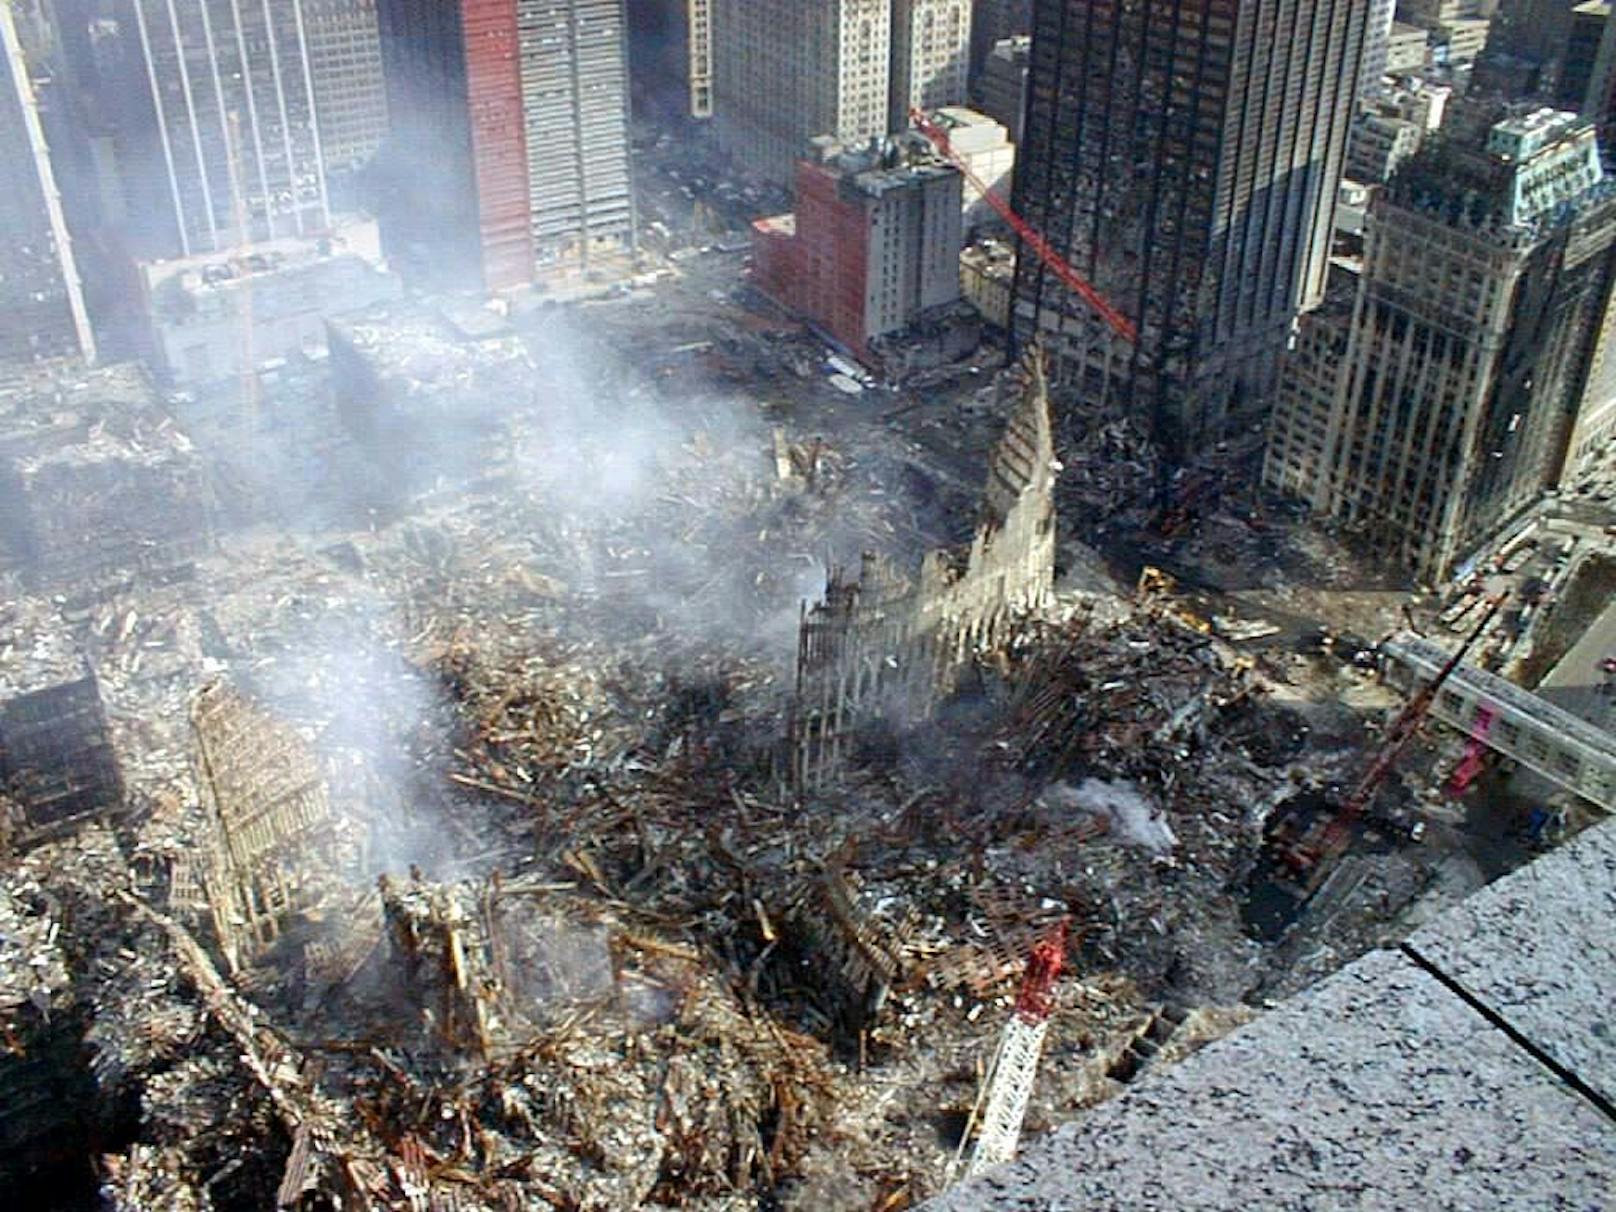 Die US-Behörden wollen die Veröffentlichung bislang geheim gehaltener Dokumente zu den Terroranschlägen vom 11. September 2001 prüfen.